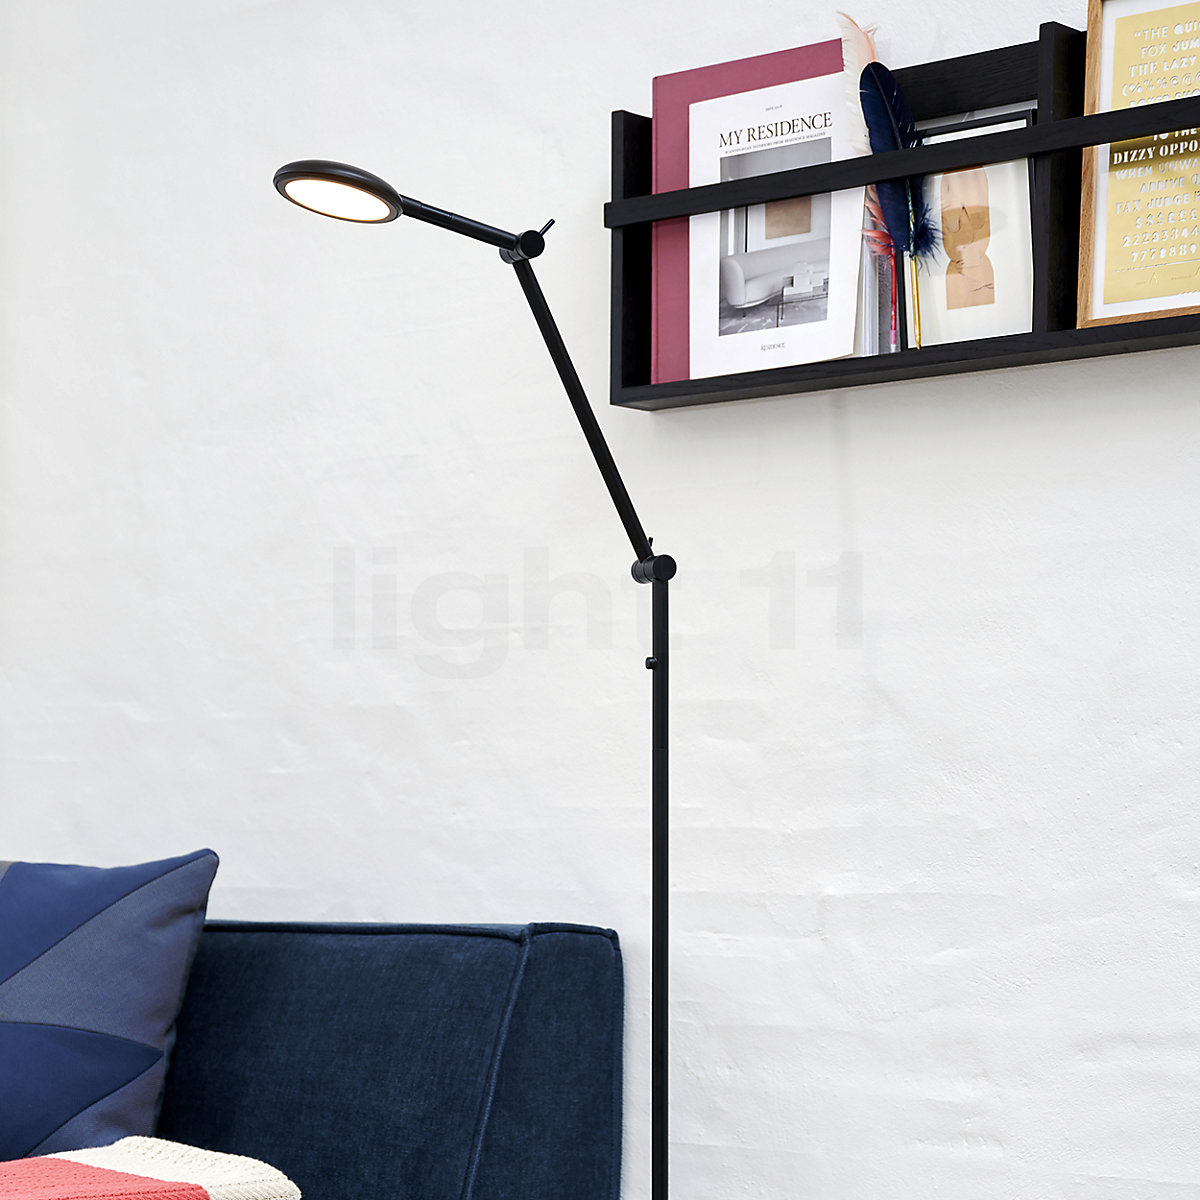 Lampe de bureau á LED Bend - Nordlux 